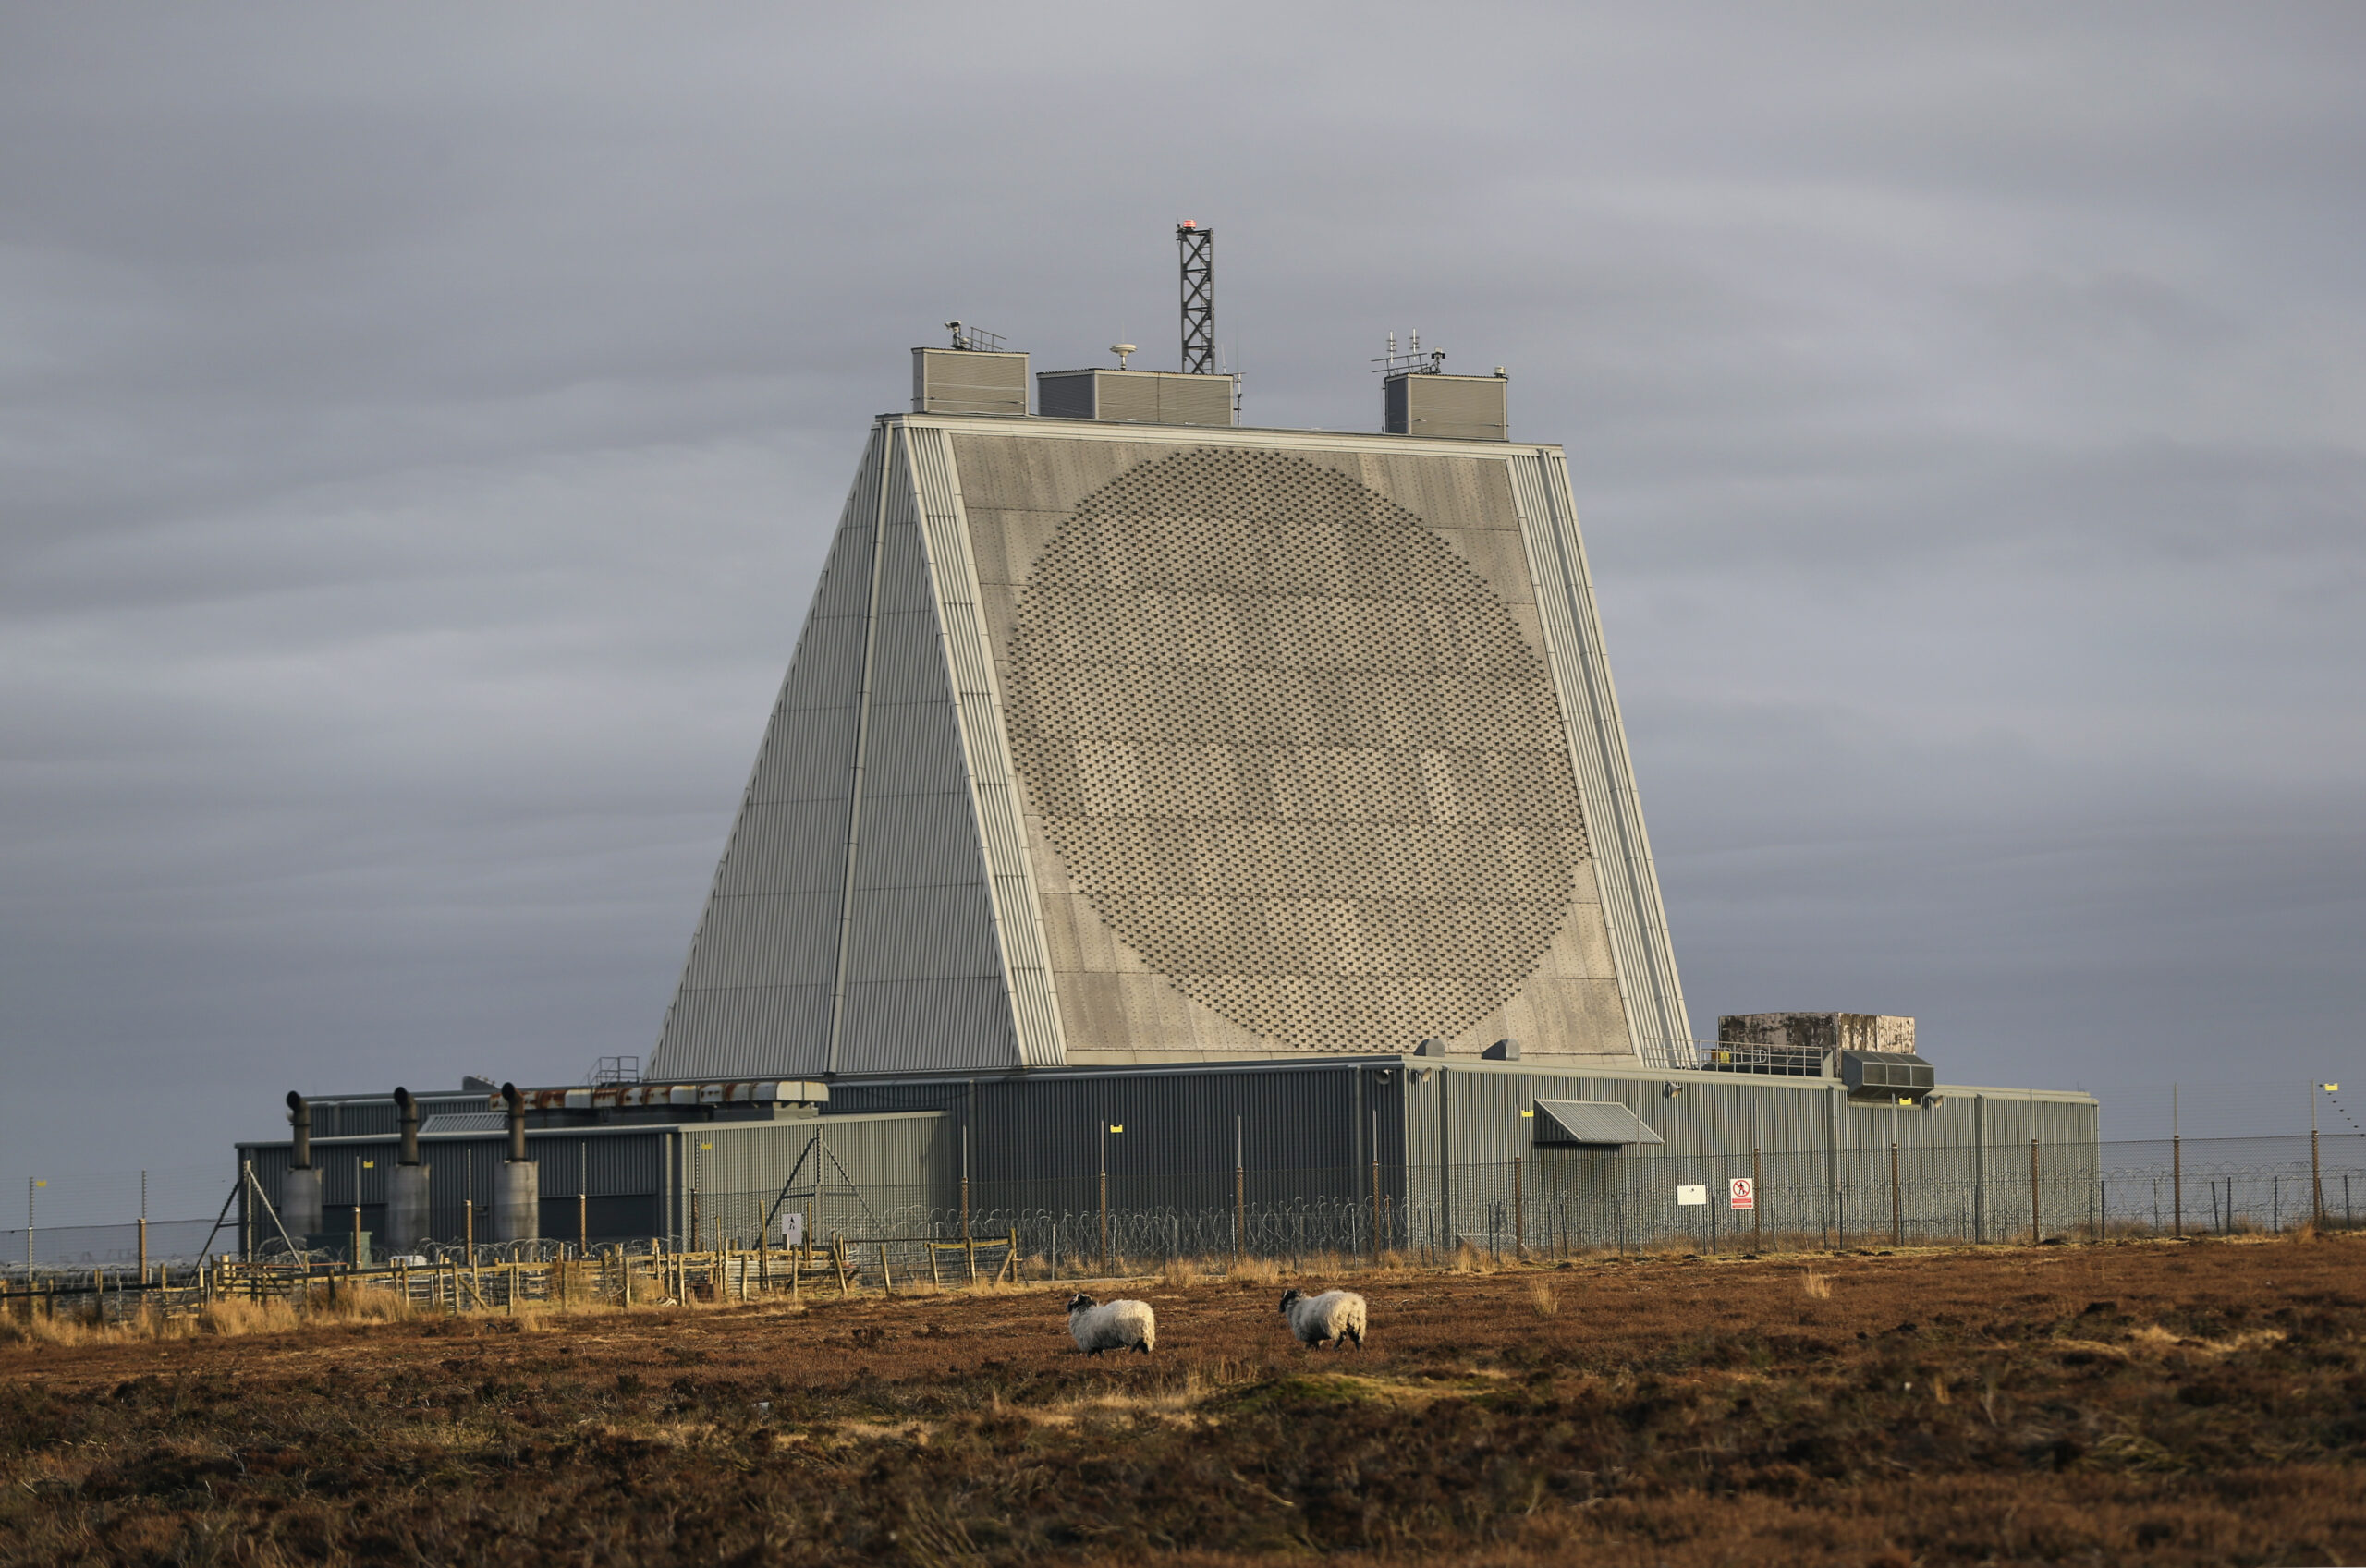 RAF Fylingdales radar